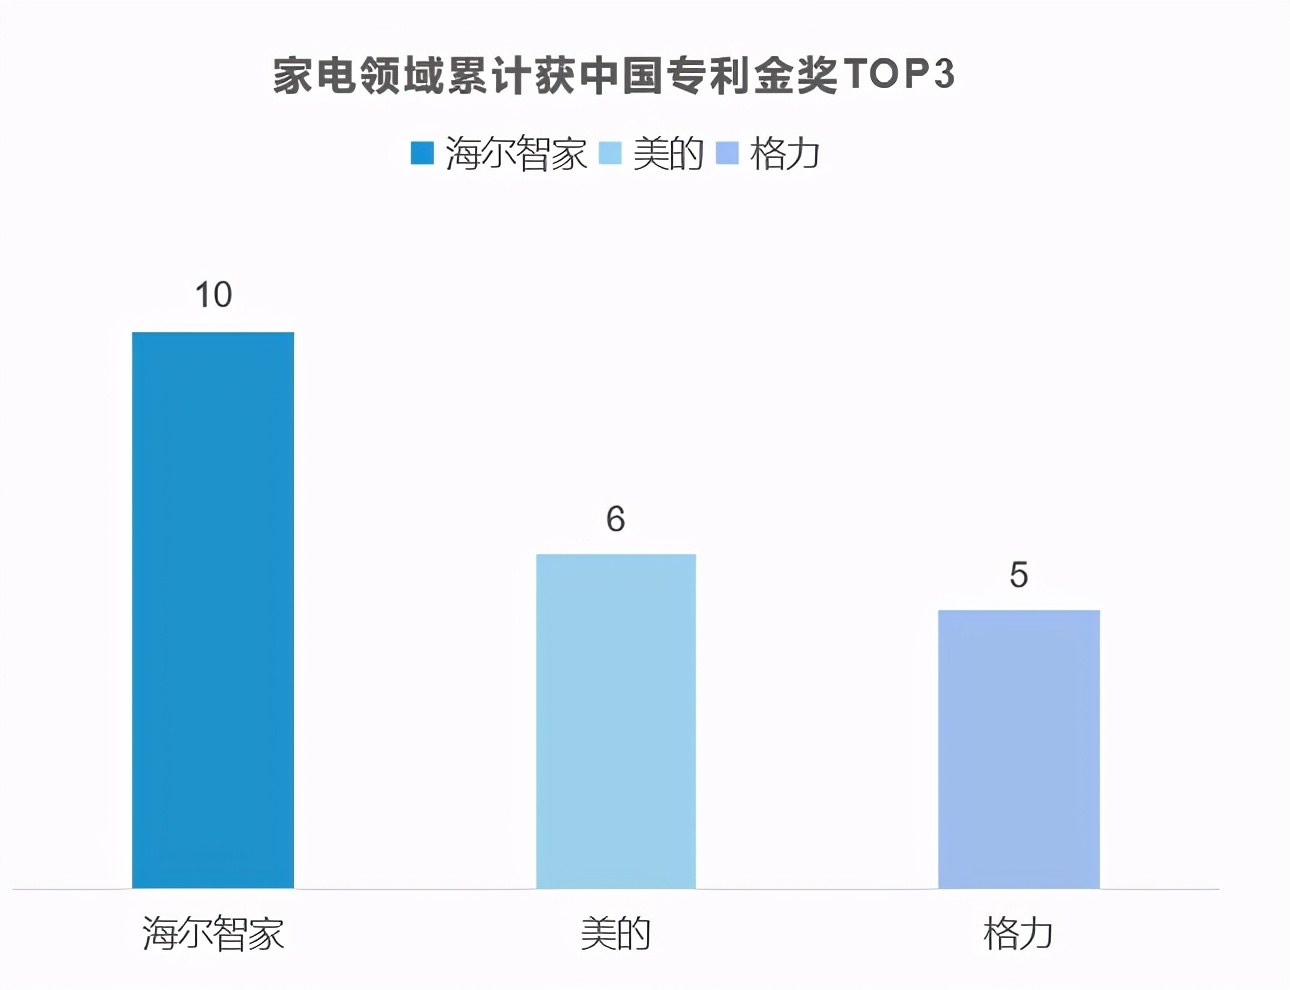 第22届中国专利金奖：海尔智家、美的、格力累计TOP3